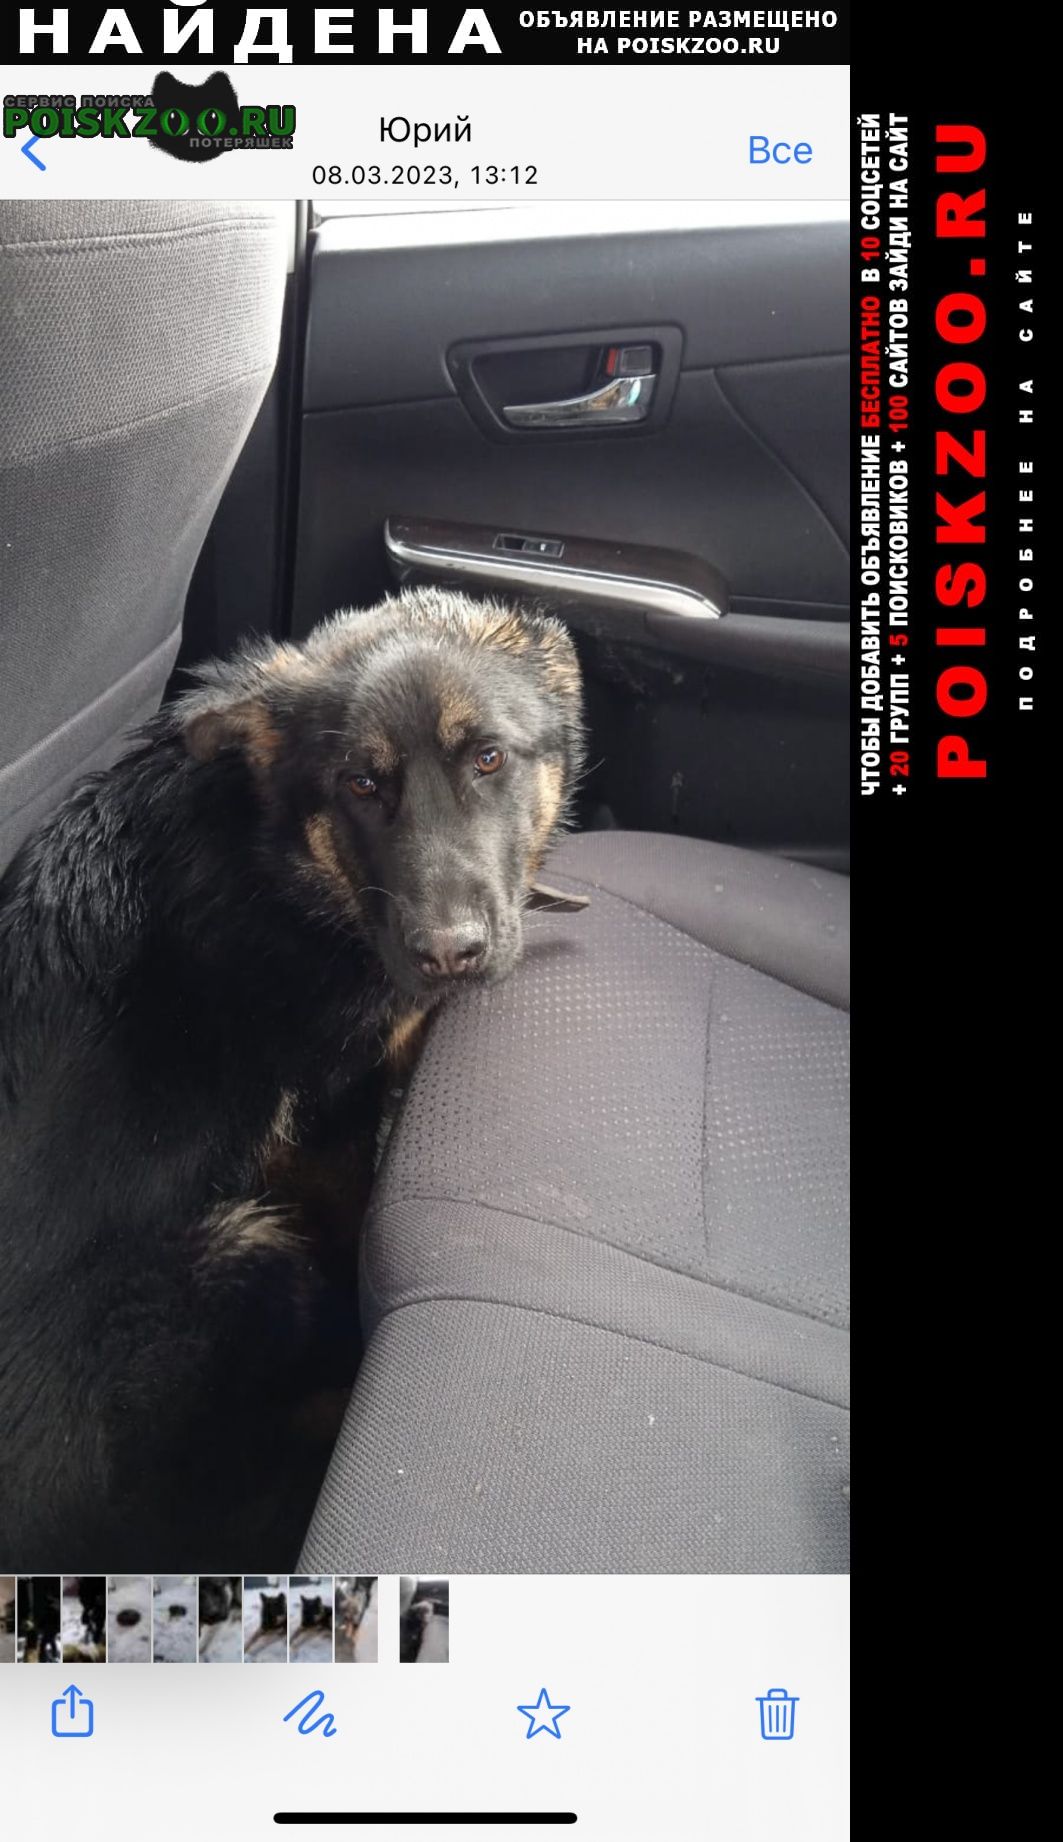 Москва Найдена собака на киевском шоссе